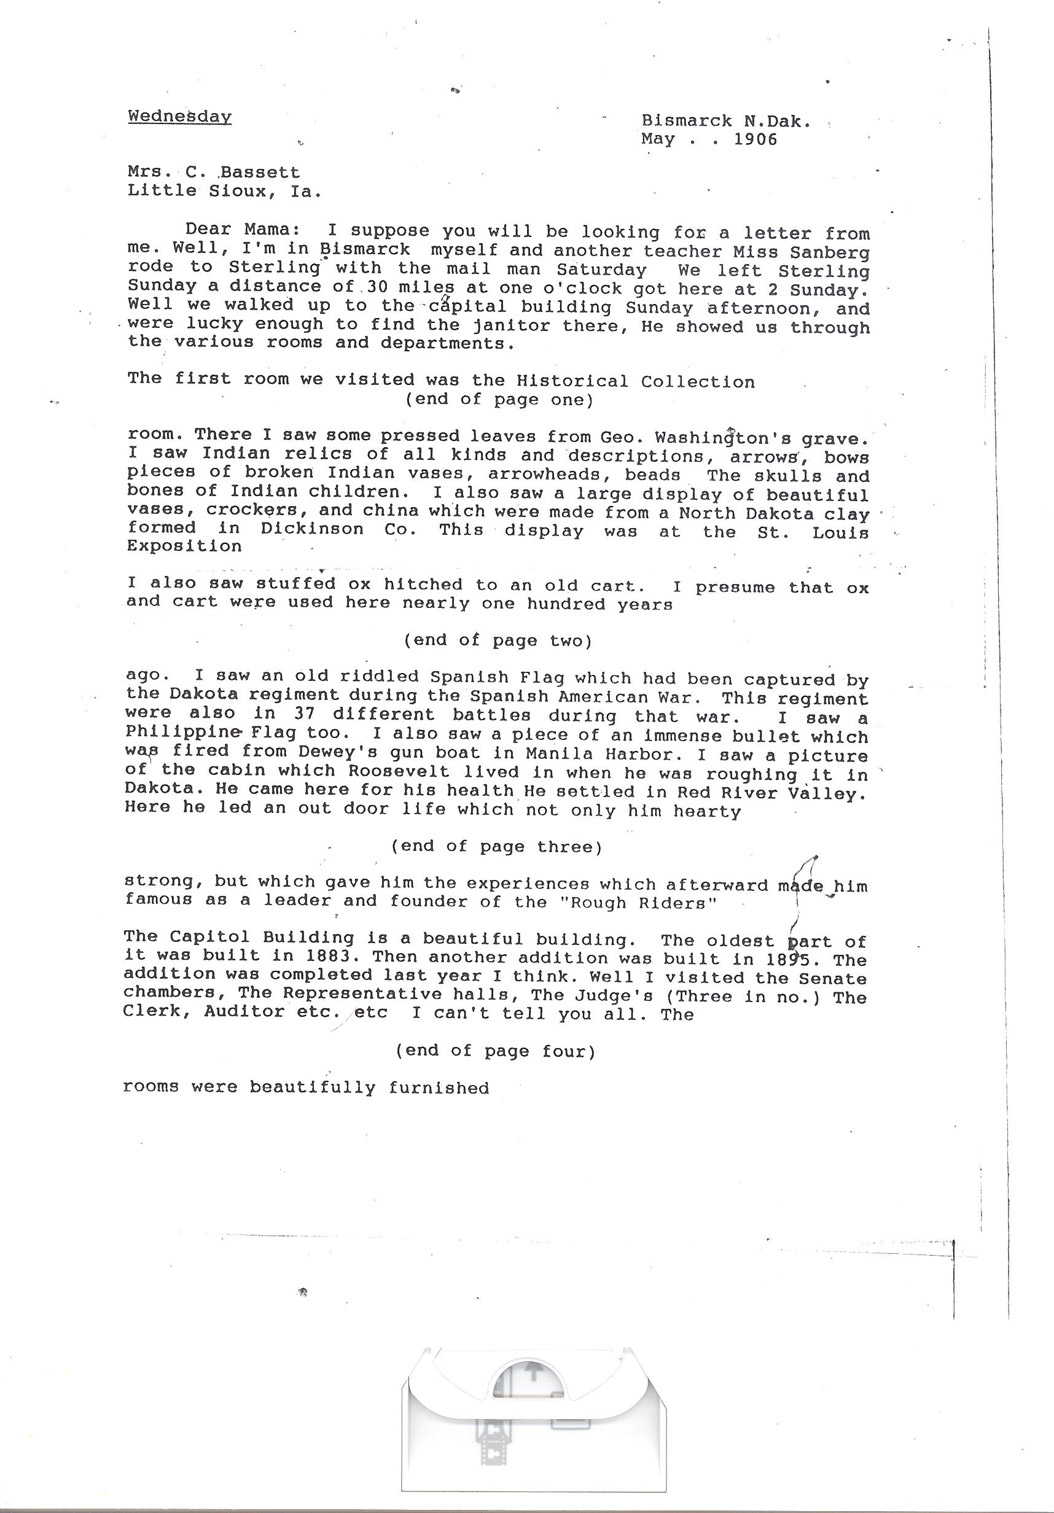 Effie Clinkenbeard Letter, original and transcript (Transcription Page 2)